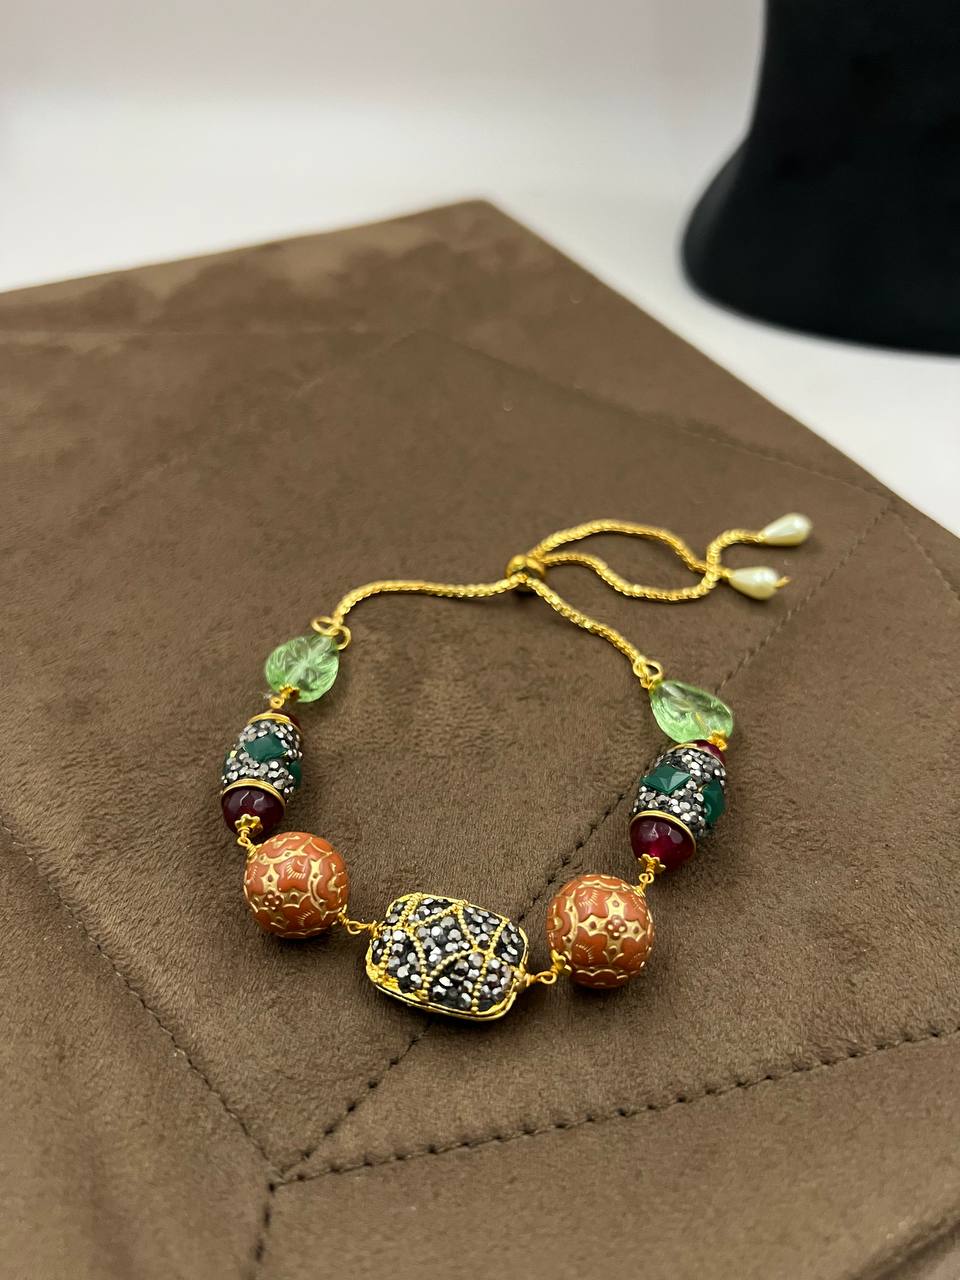 Nazakat Orange Carved Beads Jadau Bracelet Adjustable